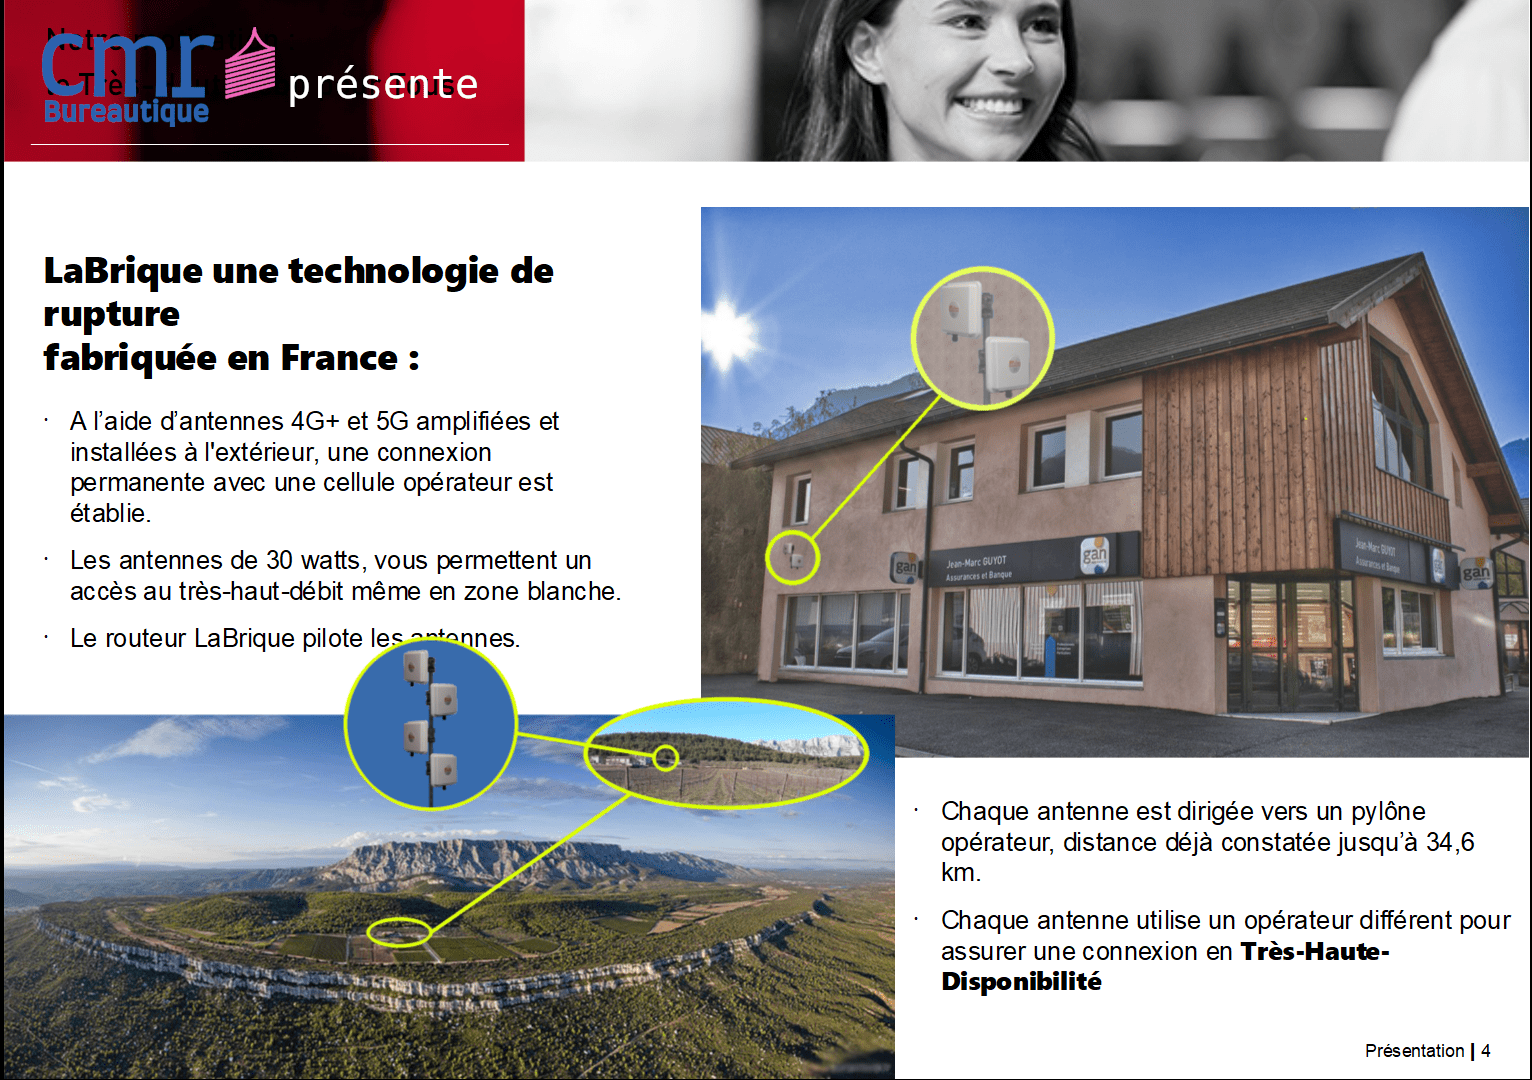 CMR Bureautique, Bourgoin-Jalieu, Isère présente LaBrique, technologie de rupture.